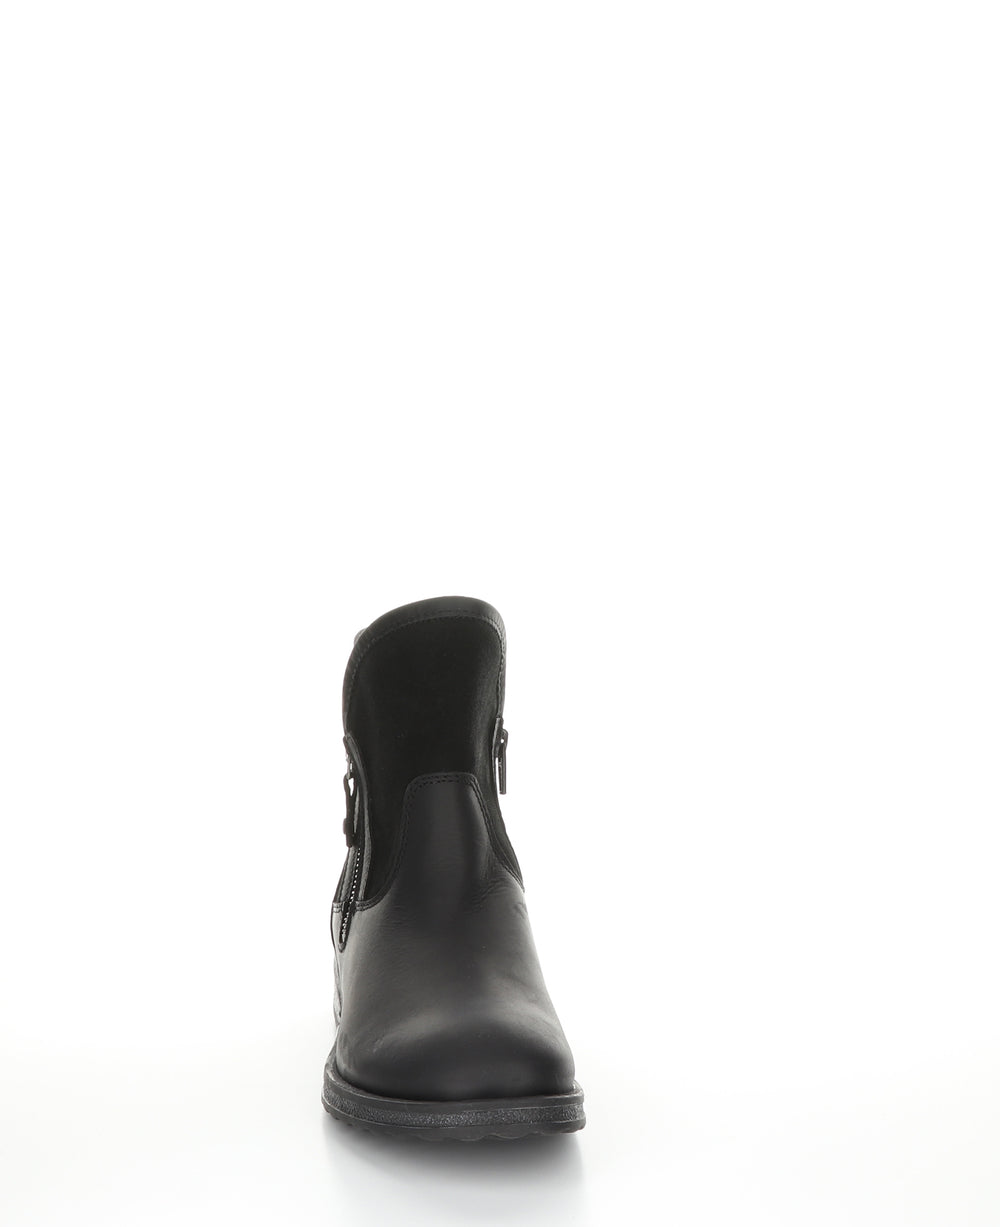 STRIVE Black Zip Up Ankle Boots|STRIVE Bottines avec Fermeture Zippée in Noir